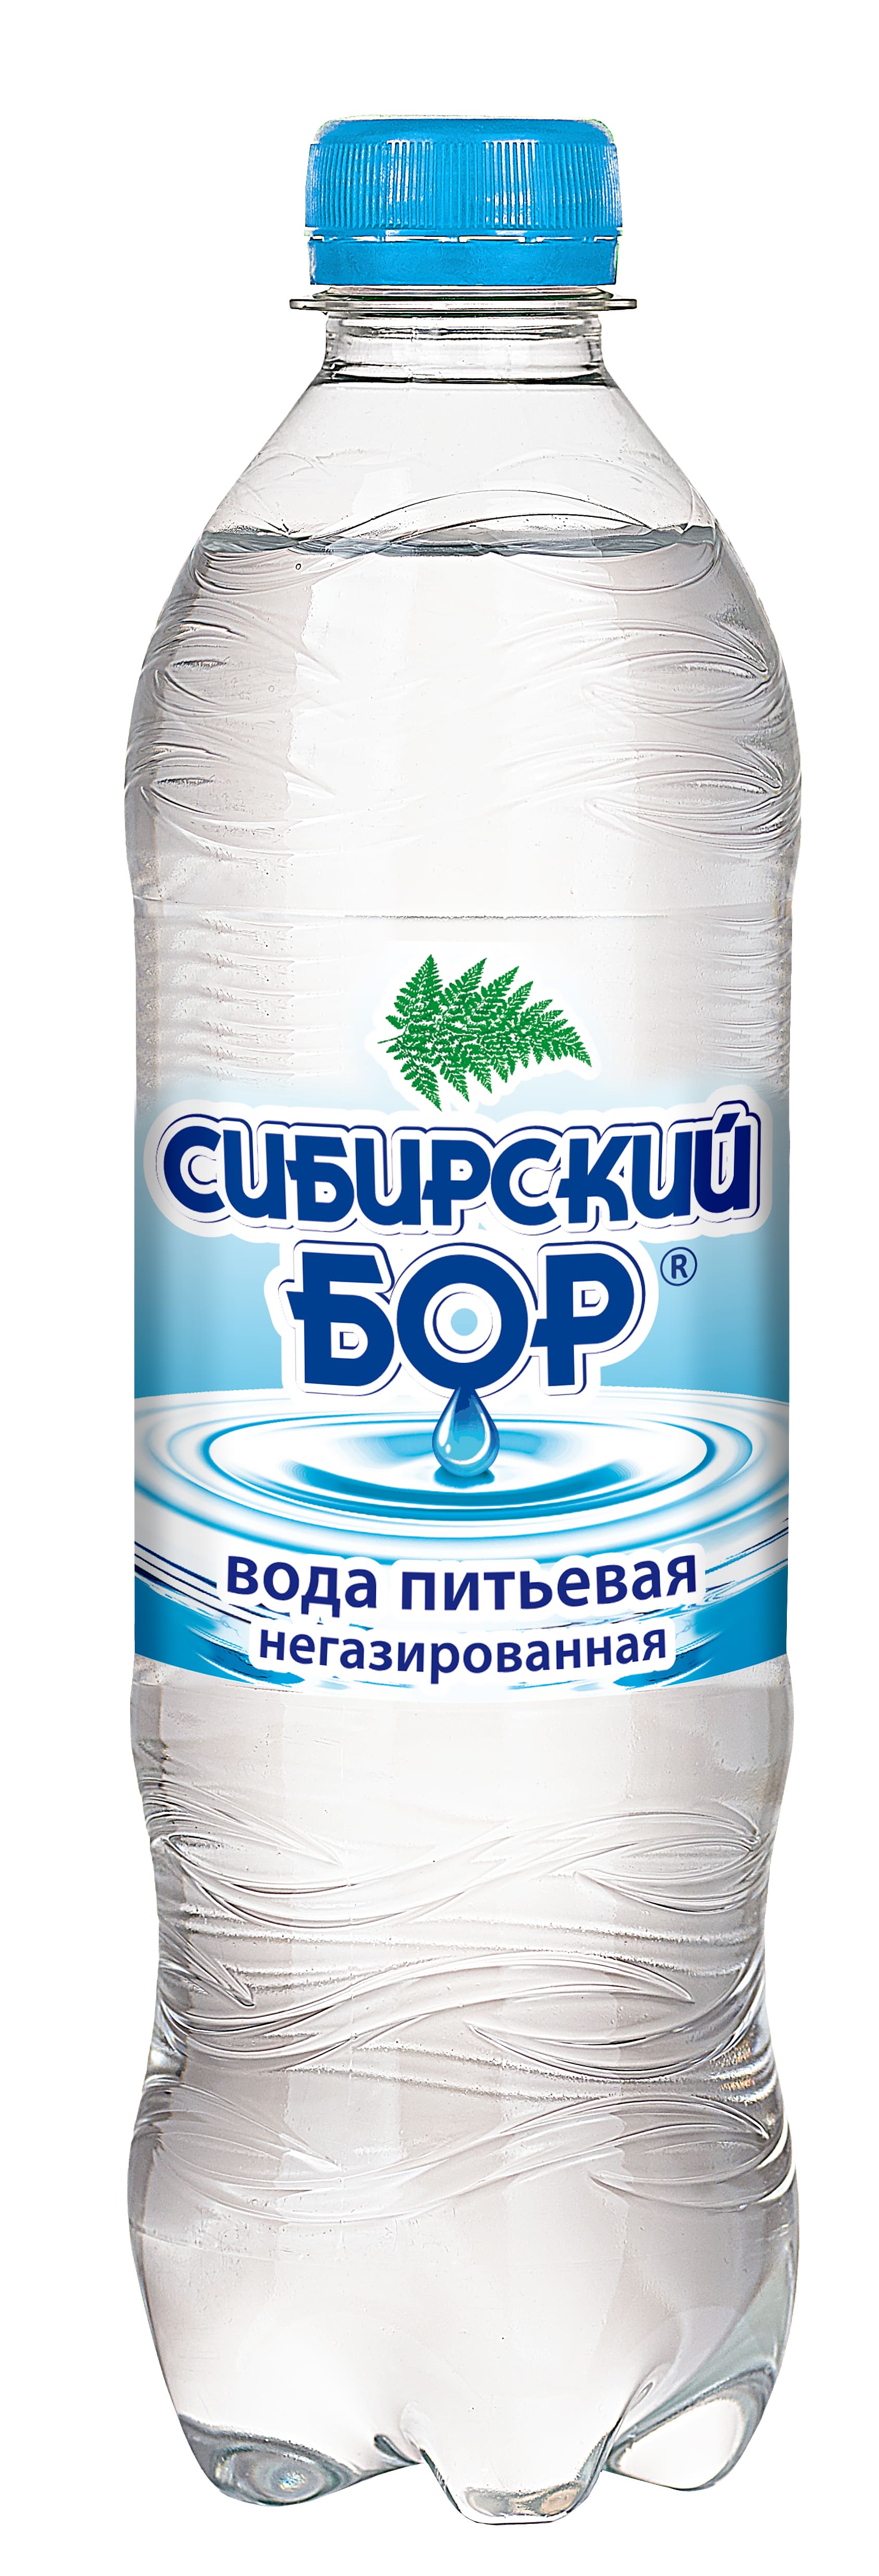 Вода питьевая Spring Сибирский бор артезианская негазированная 0,5 л